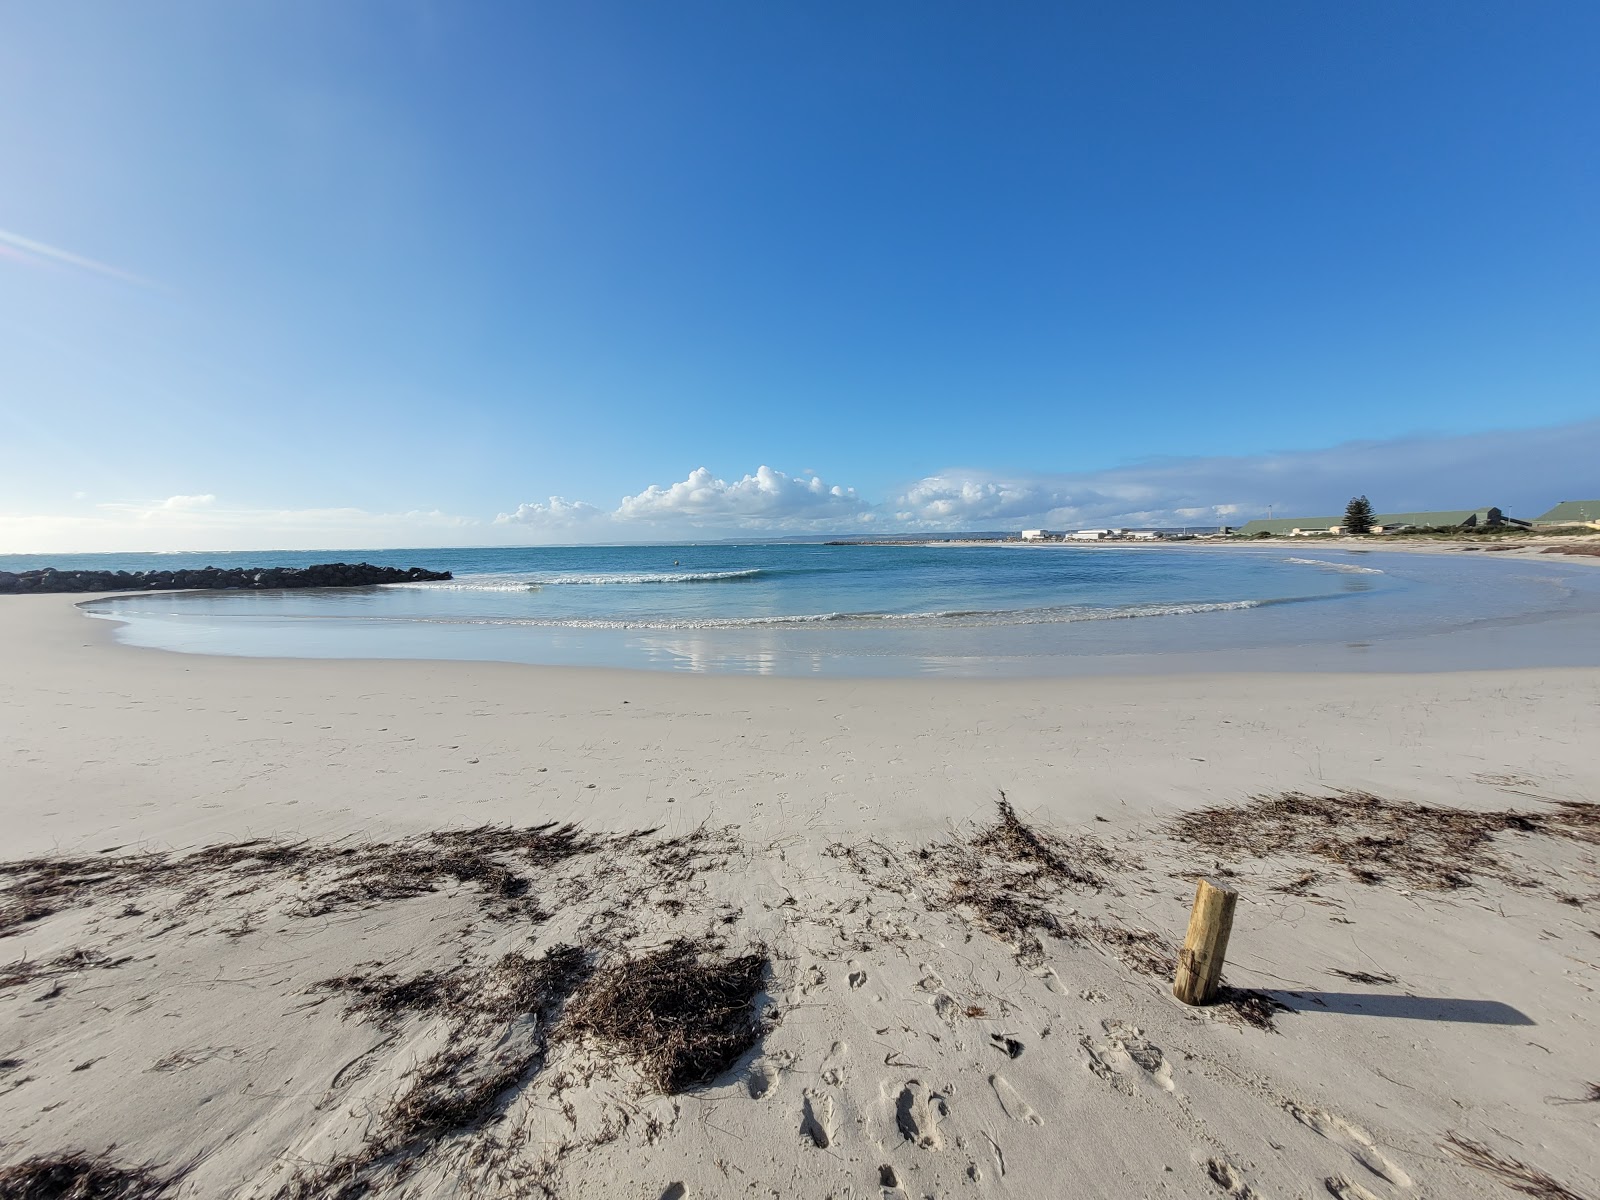 Foto di Pages Beach con una superficie del sabbia fine e luminosa